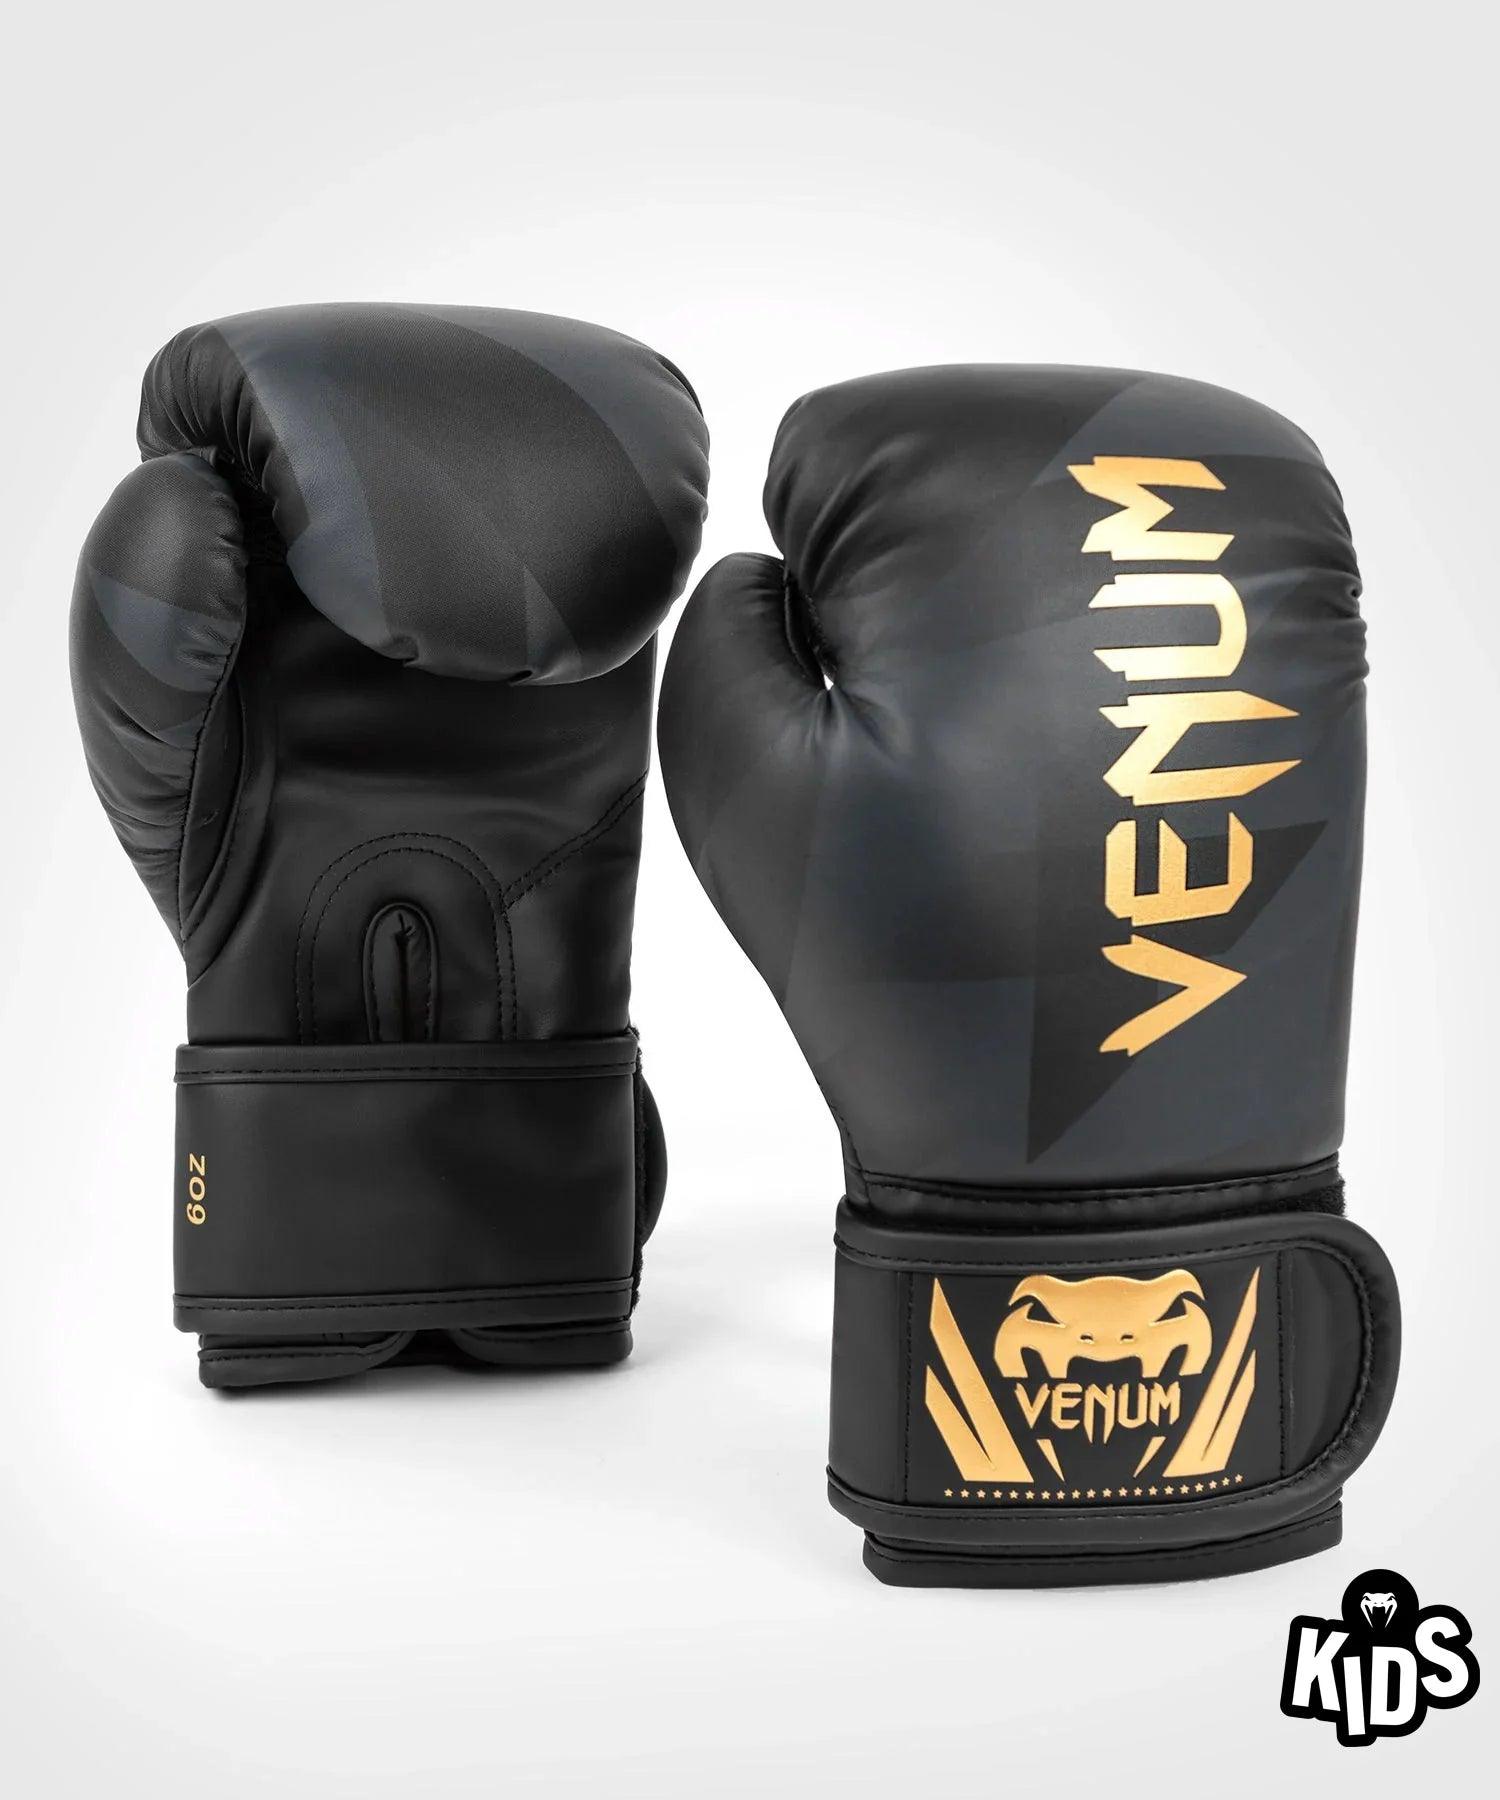 Gants de Boxe Venum Razor - Pour Enfants - Noir/Or - Boutique des Arts Martiaux et Sports de Combat